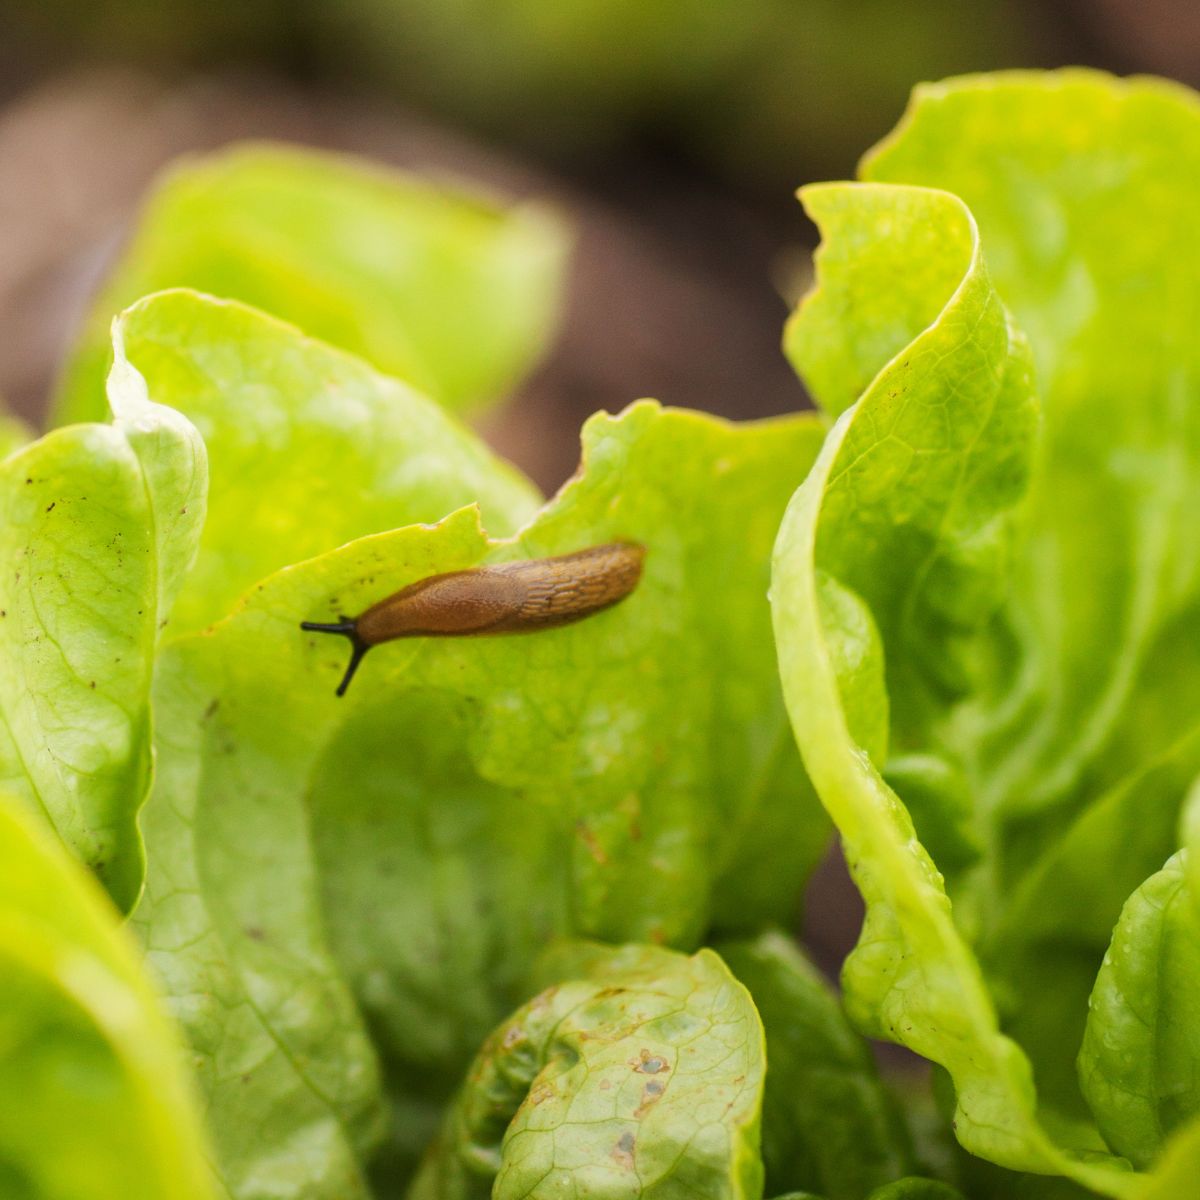 a slug on a lettuce leaf